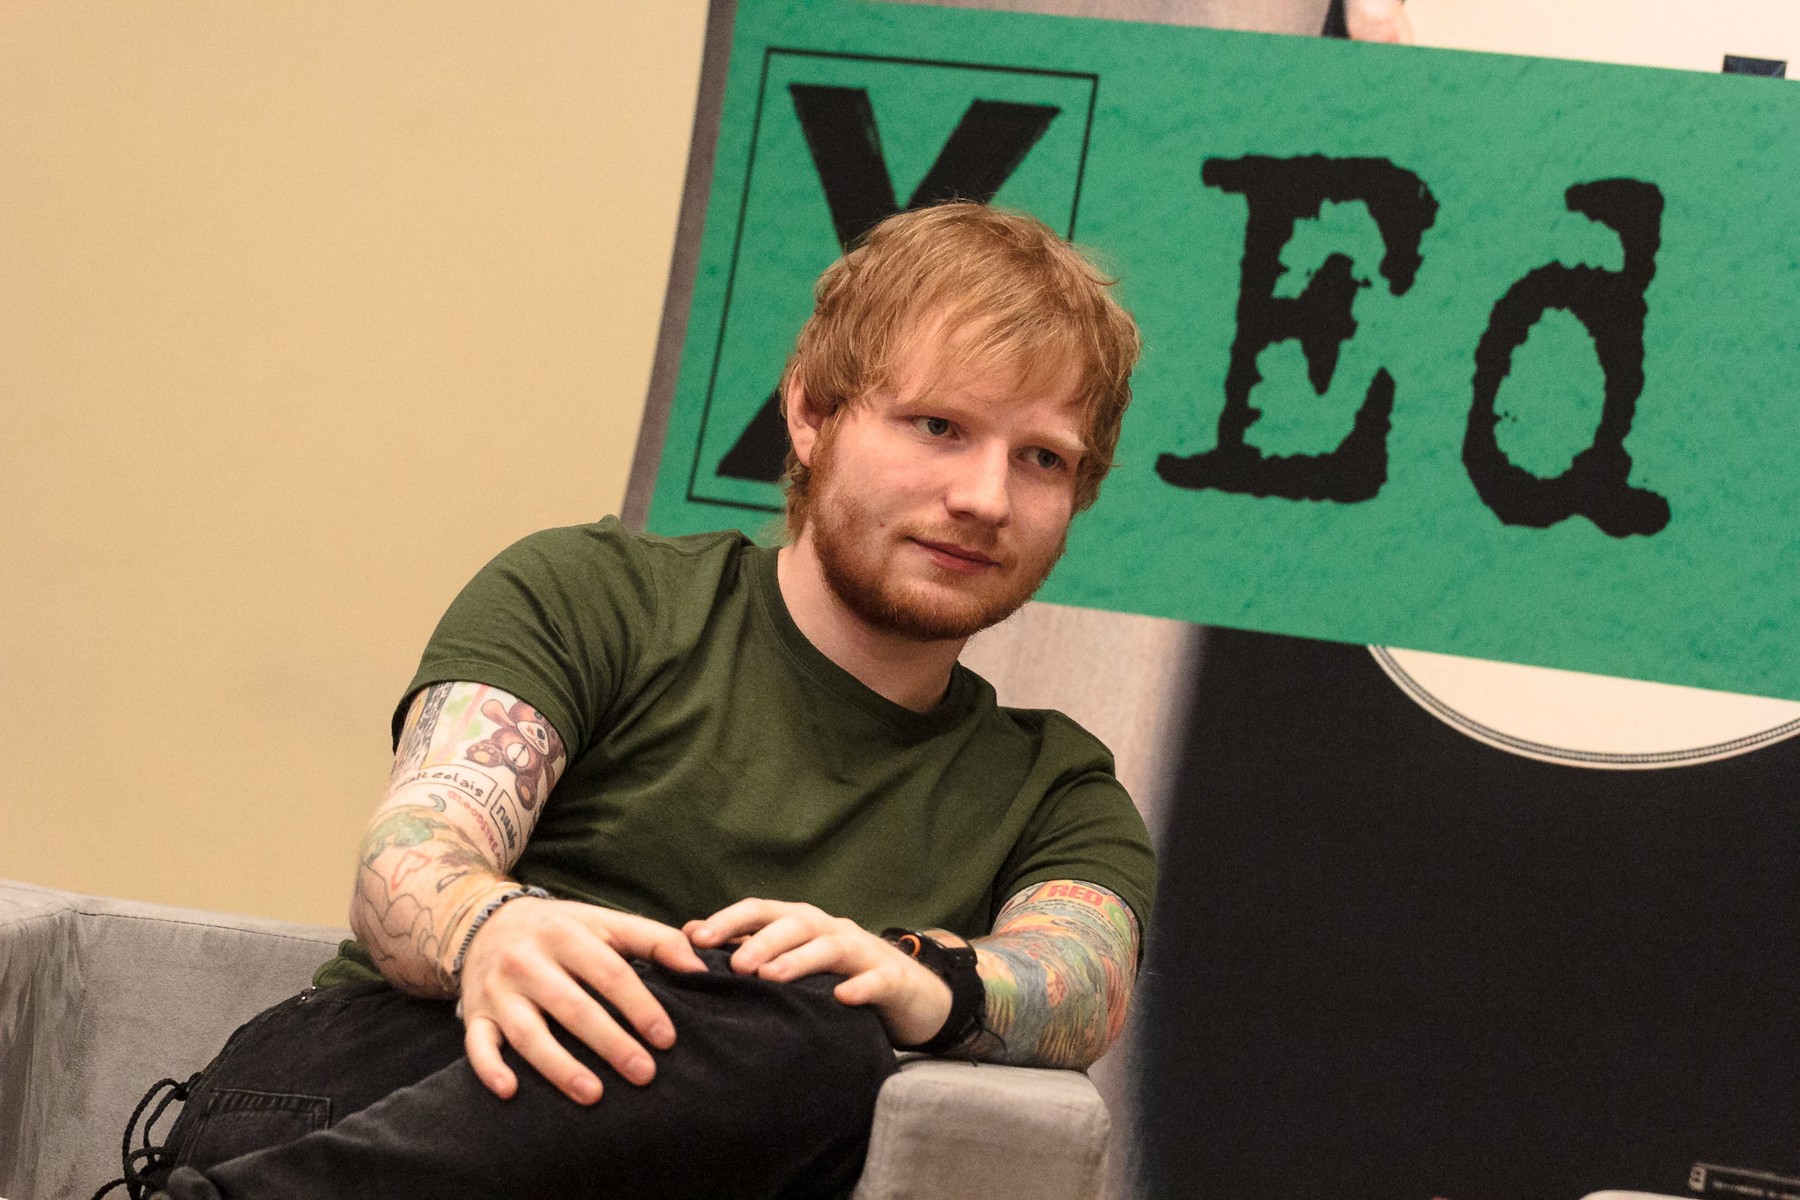 Ed Sheeran schimbă direcția muzicală și renunță la chitară. Ce planuri are artistul?